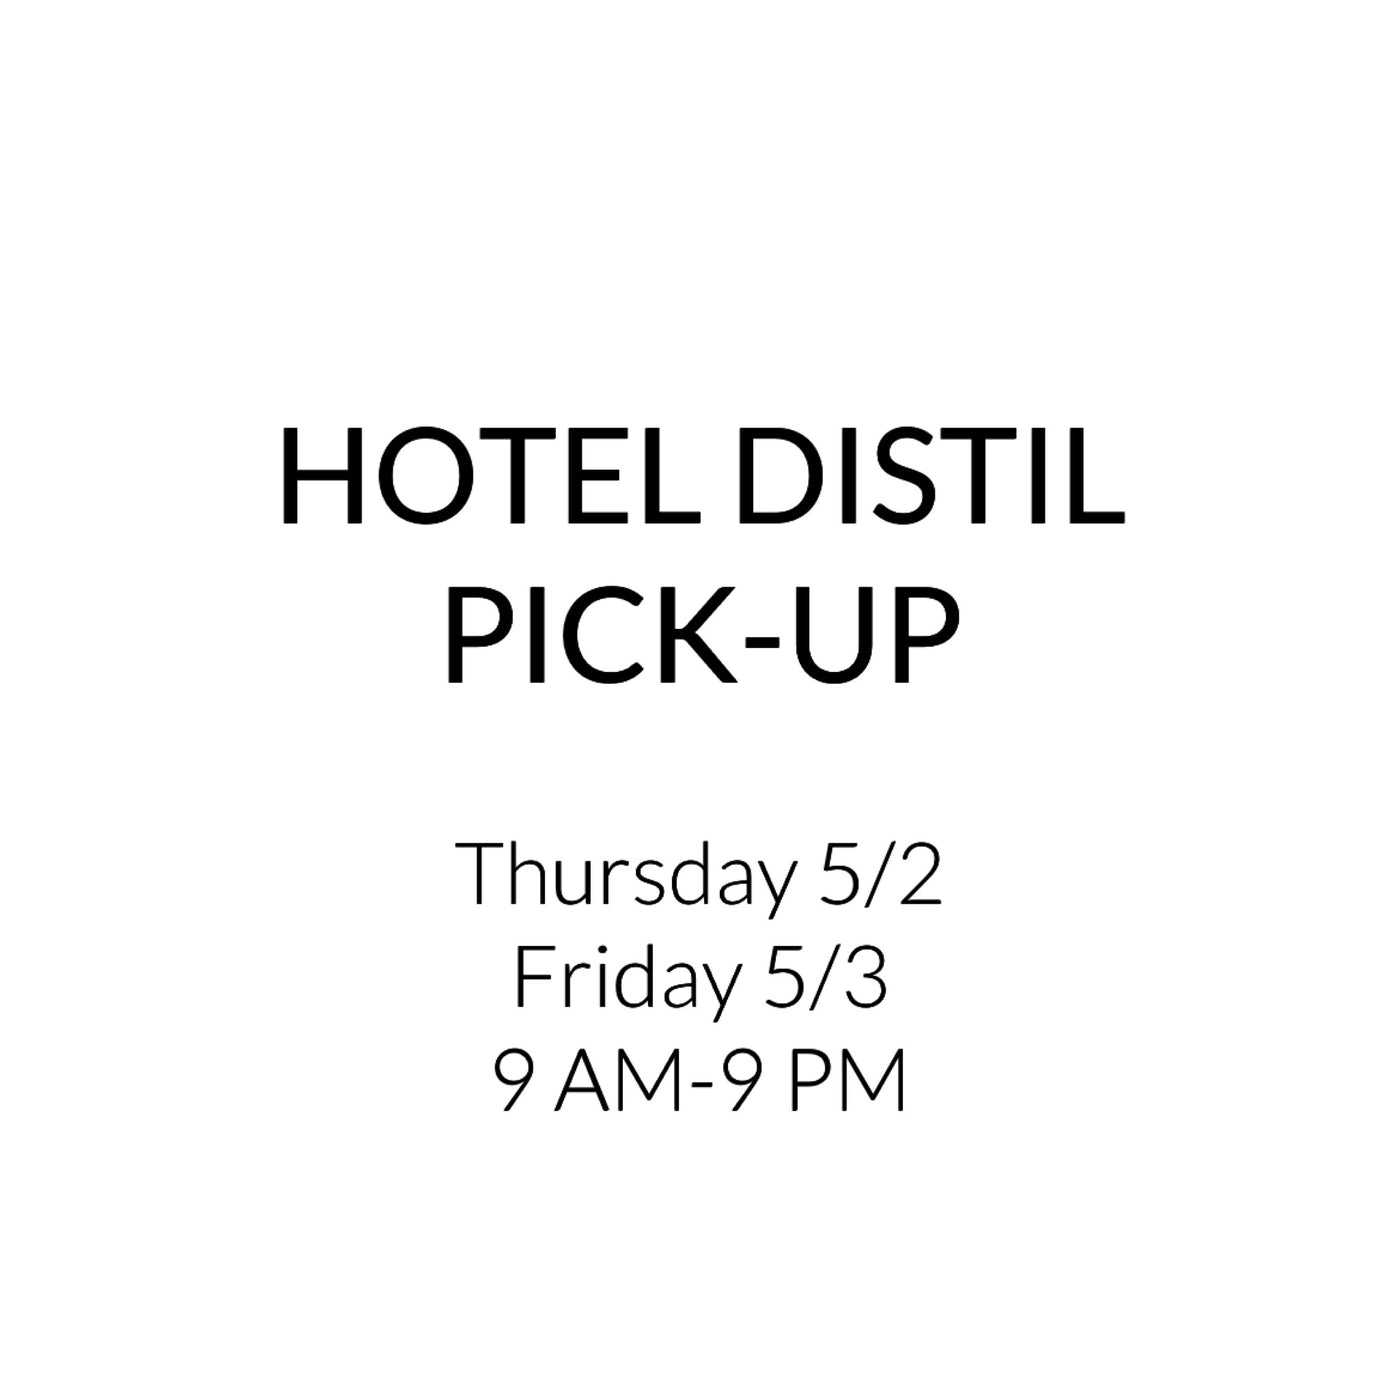 Pick-Up at Hotel Distil